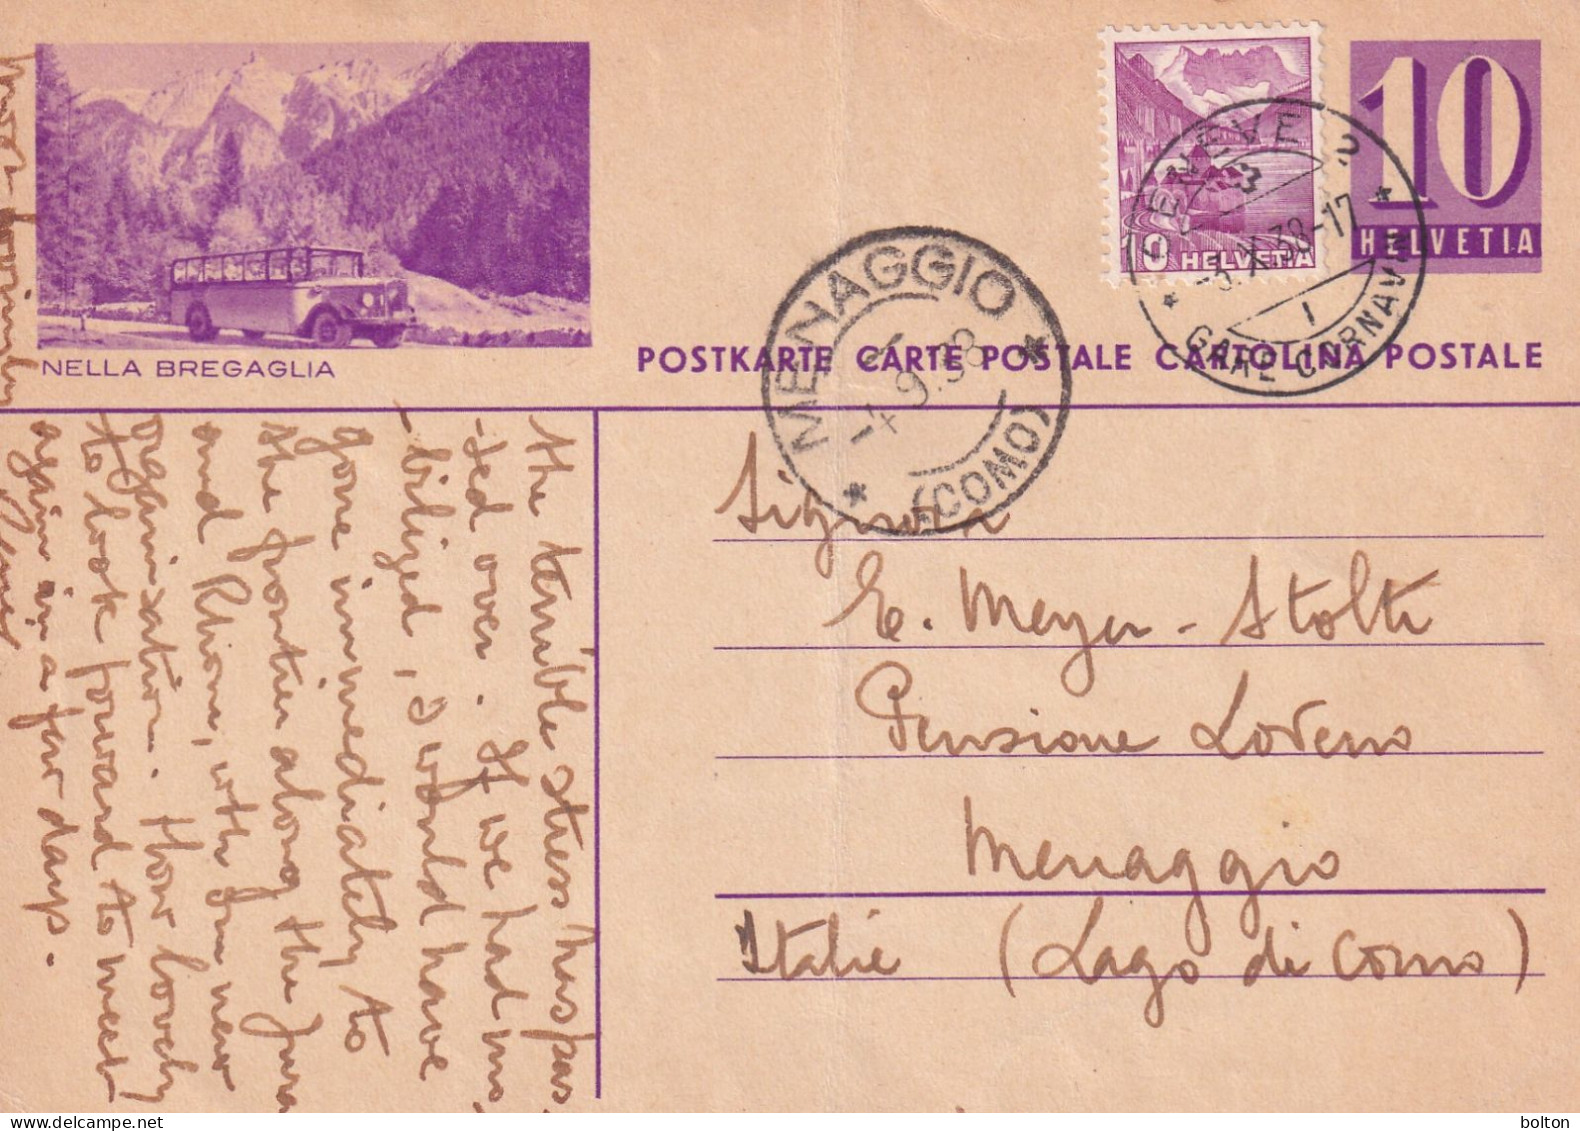 1939 Svizzera Intero Postale Figurato  AUTOBUS   NELLA BREGAGLIA - Covers & Documents